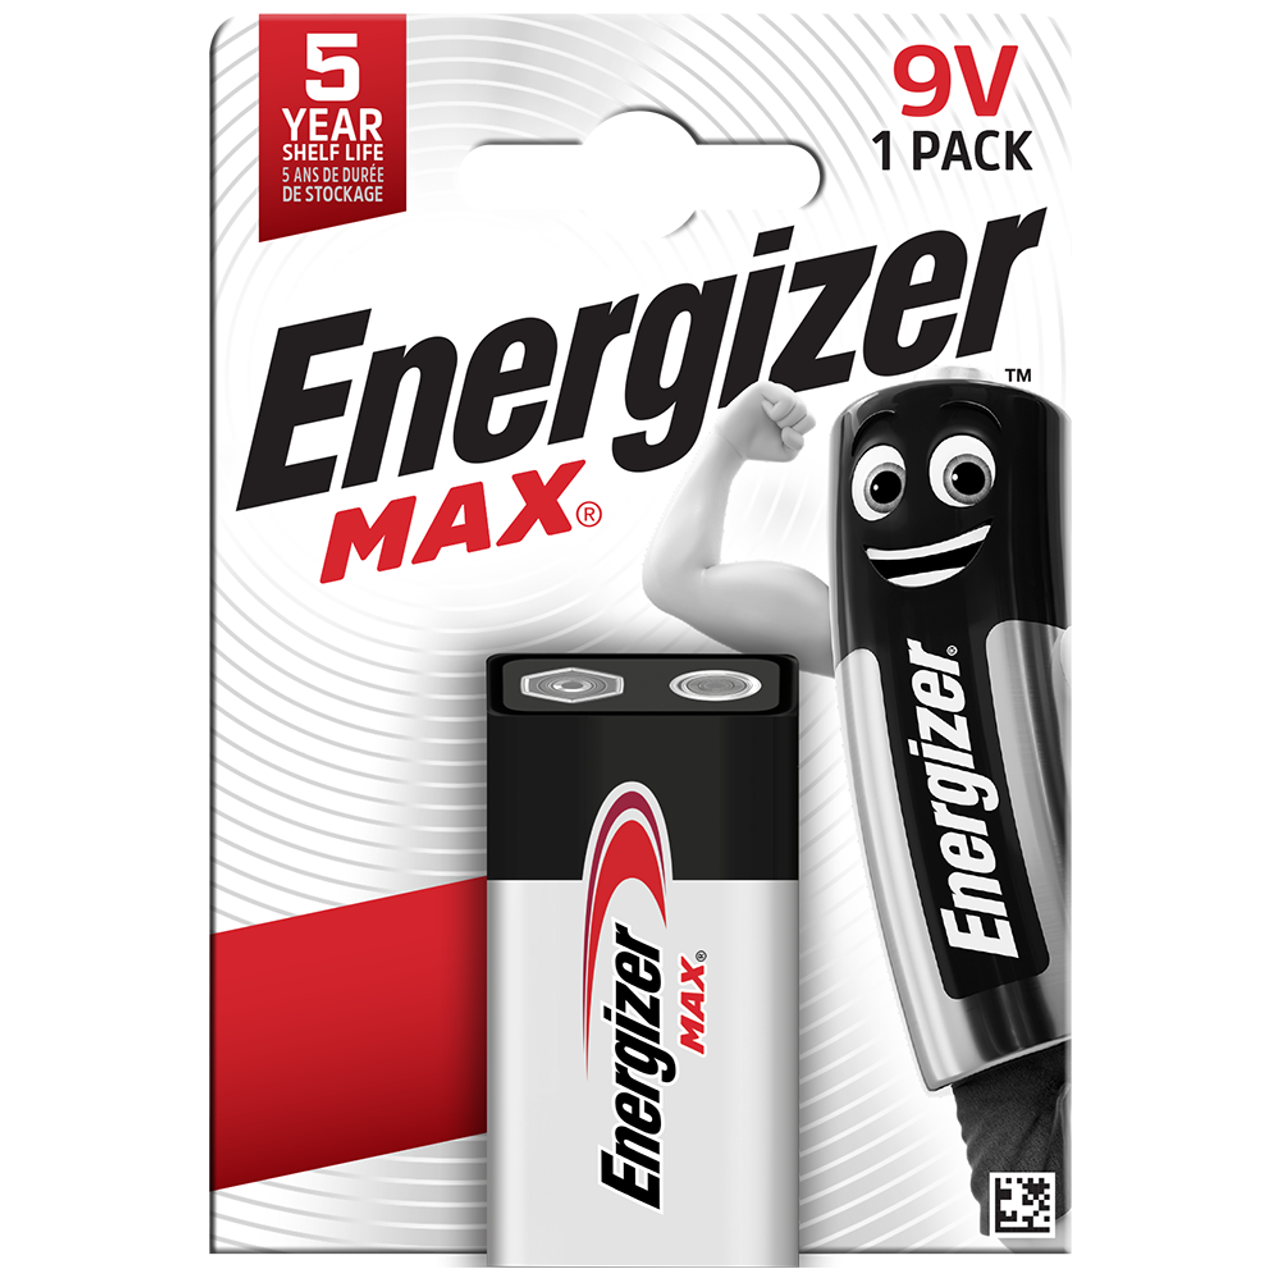 Energizer Max 9V PP3 6LR61 Alkaline Battery | 1 Pack